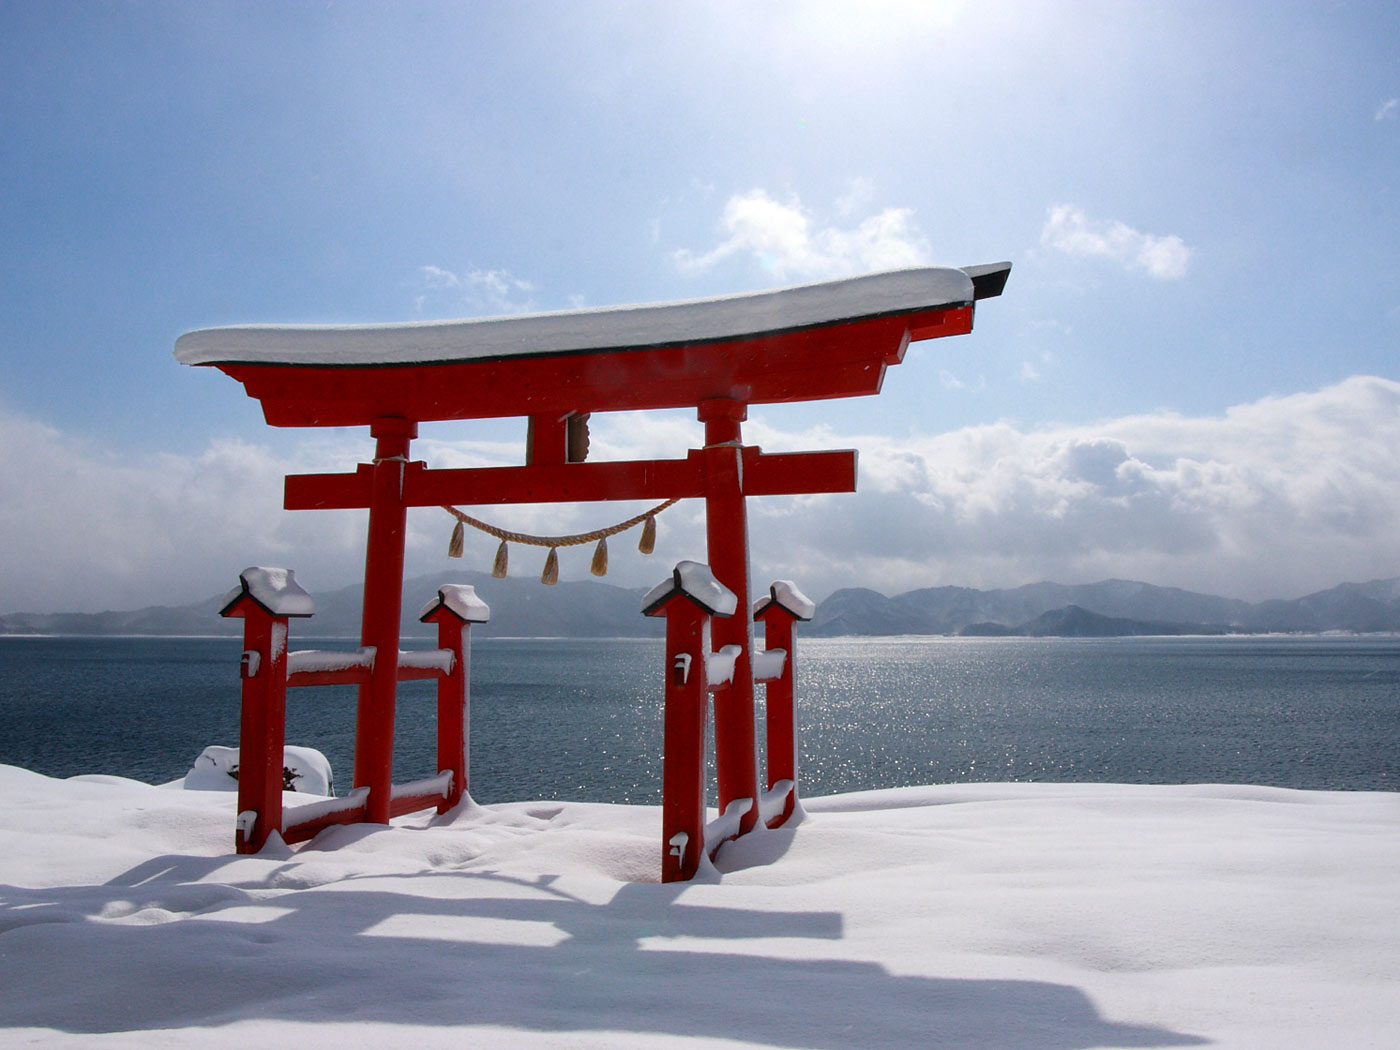 Japanese Winter Scene